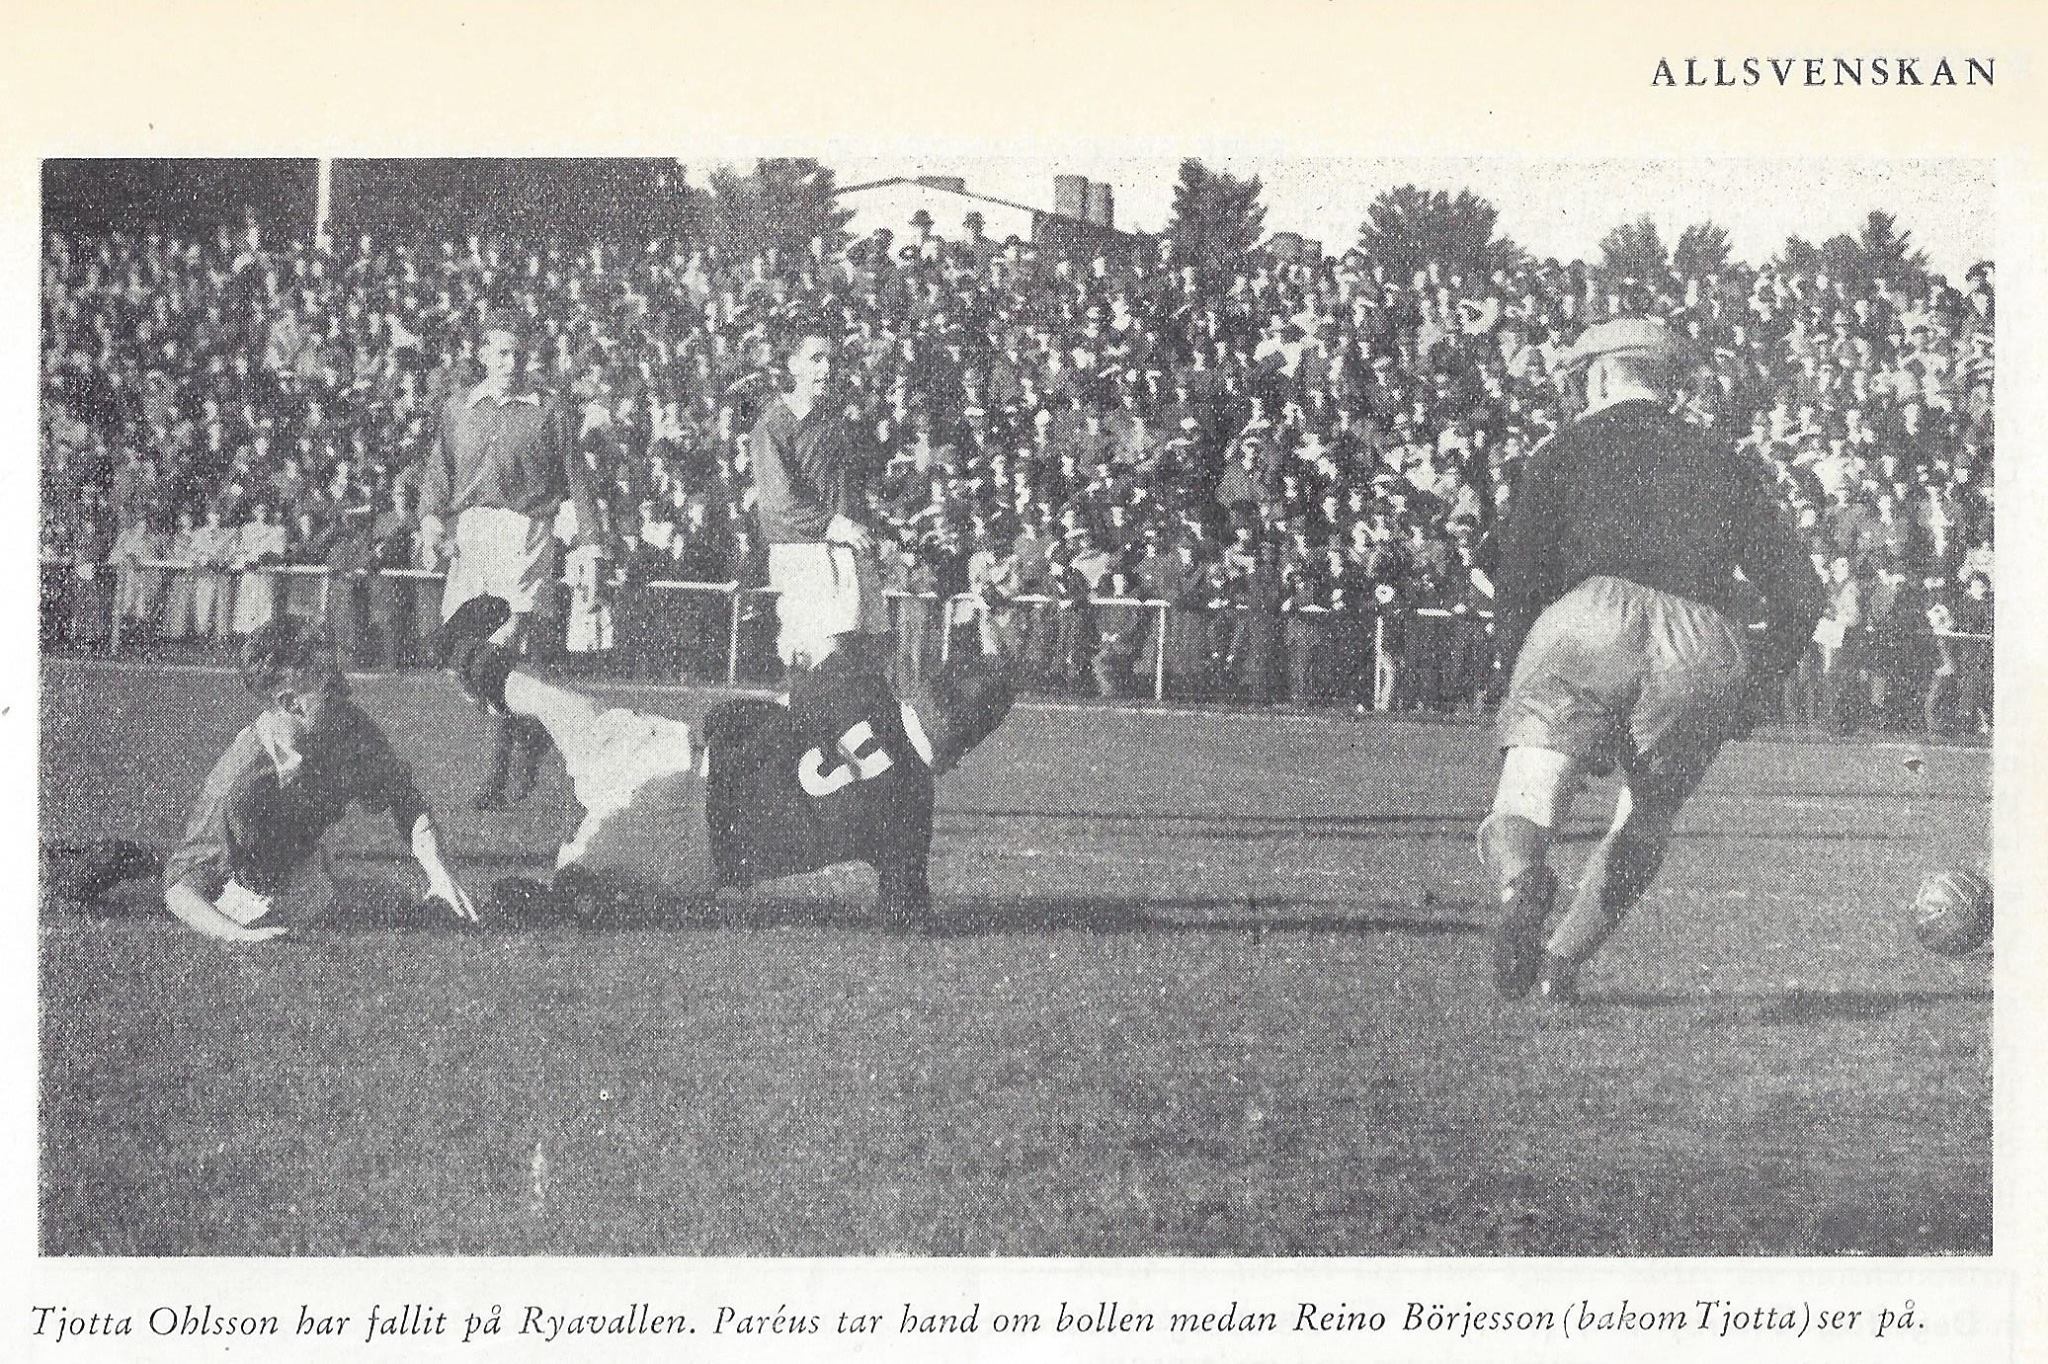 Sunday 23 October 1955  Norrby IF - AIK 2-5 (0-4)  Ryavallen, Borås